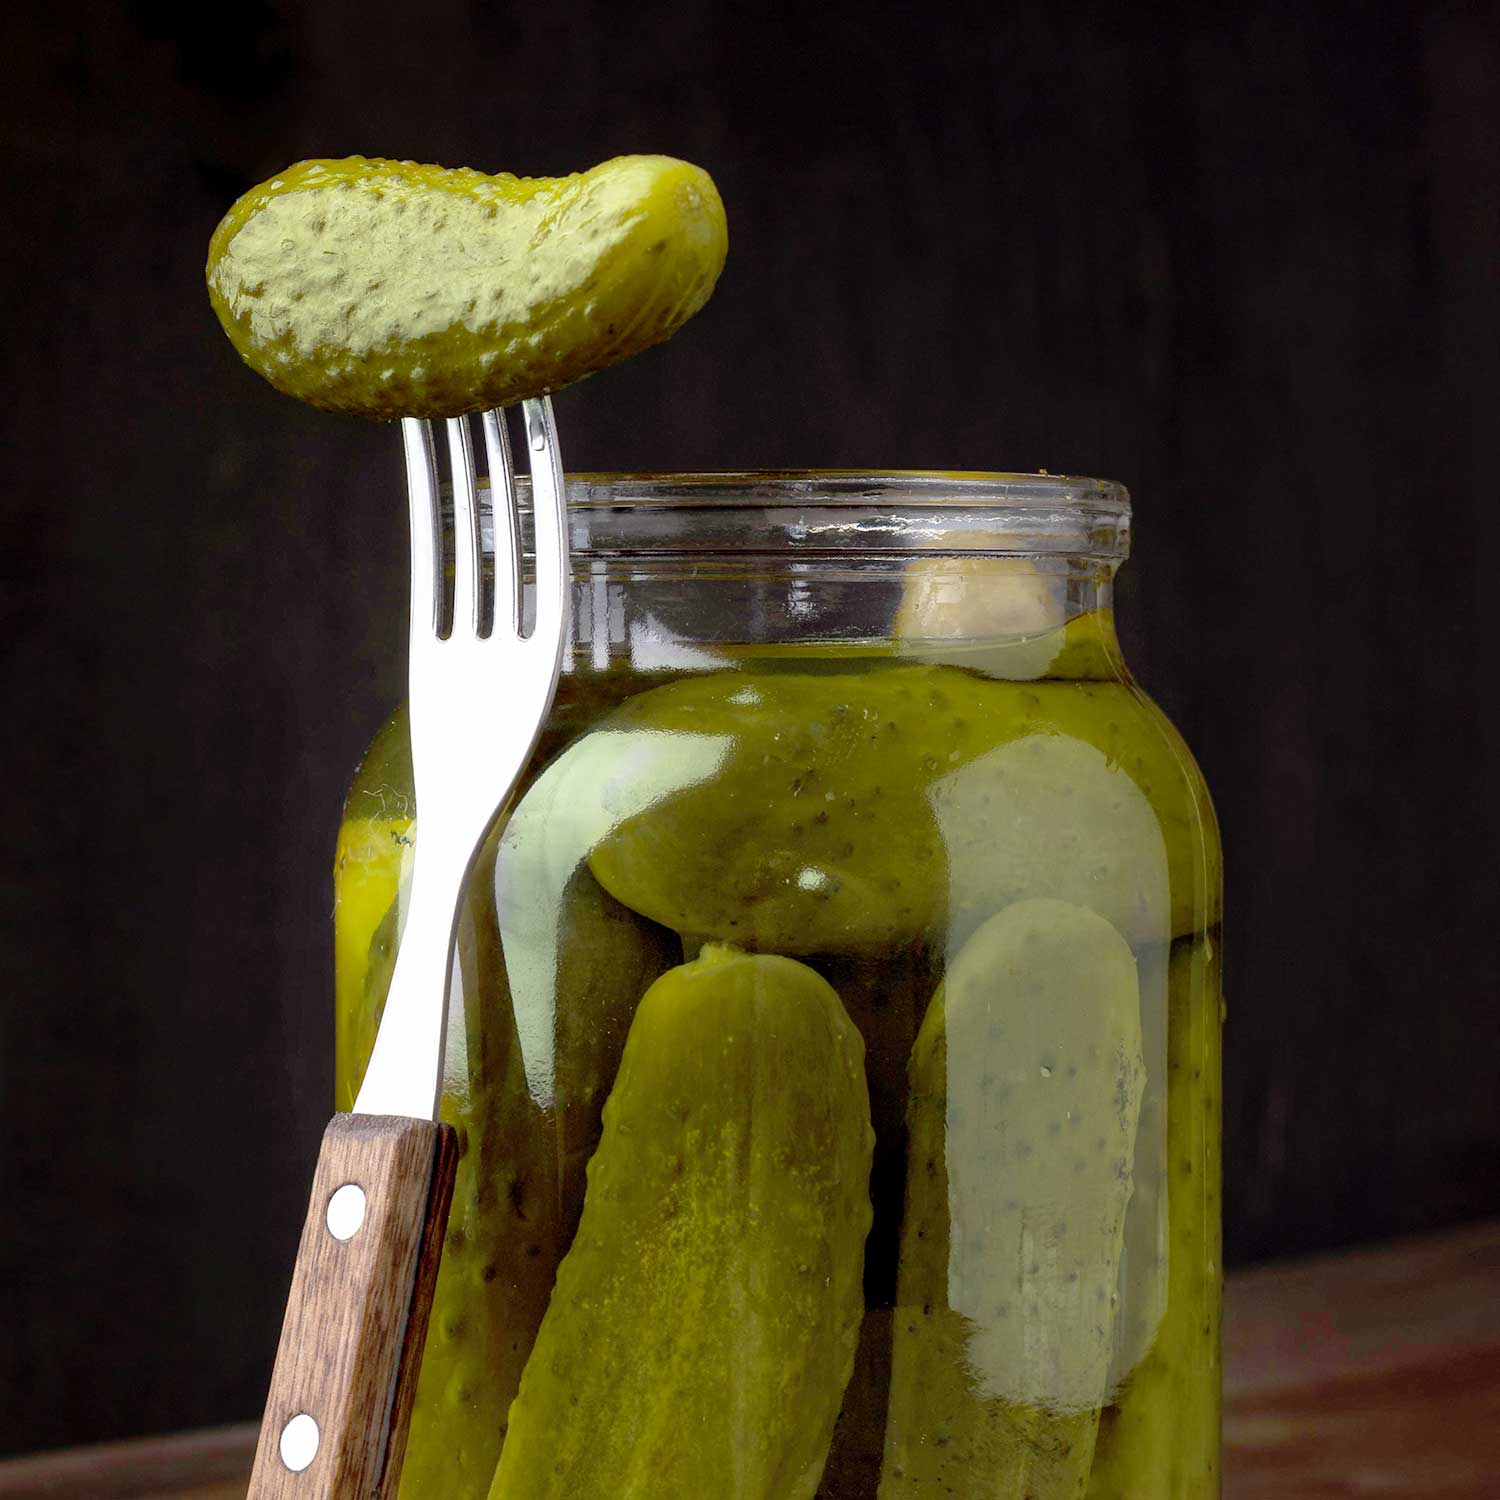 Pickles / Kimchi / Olives